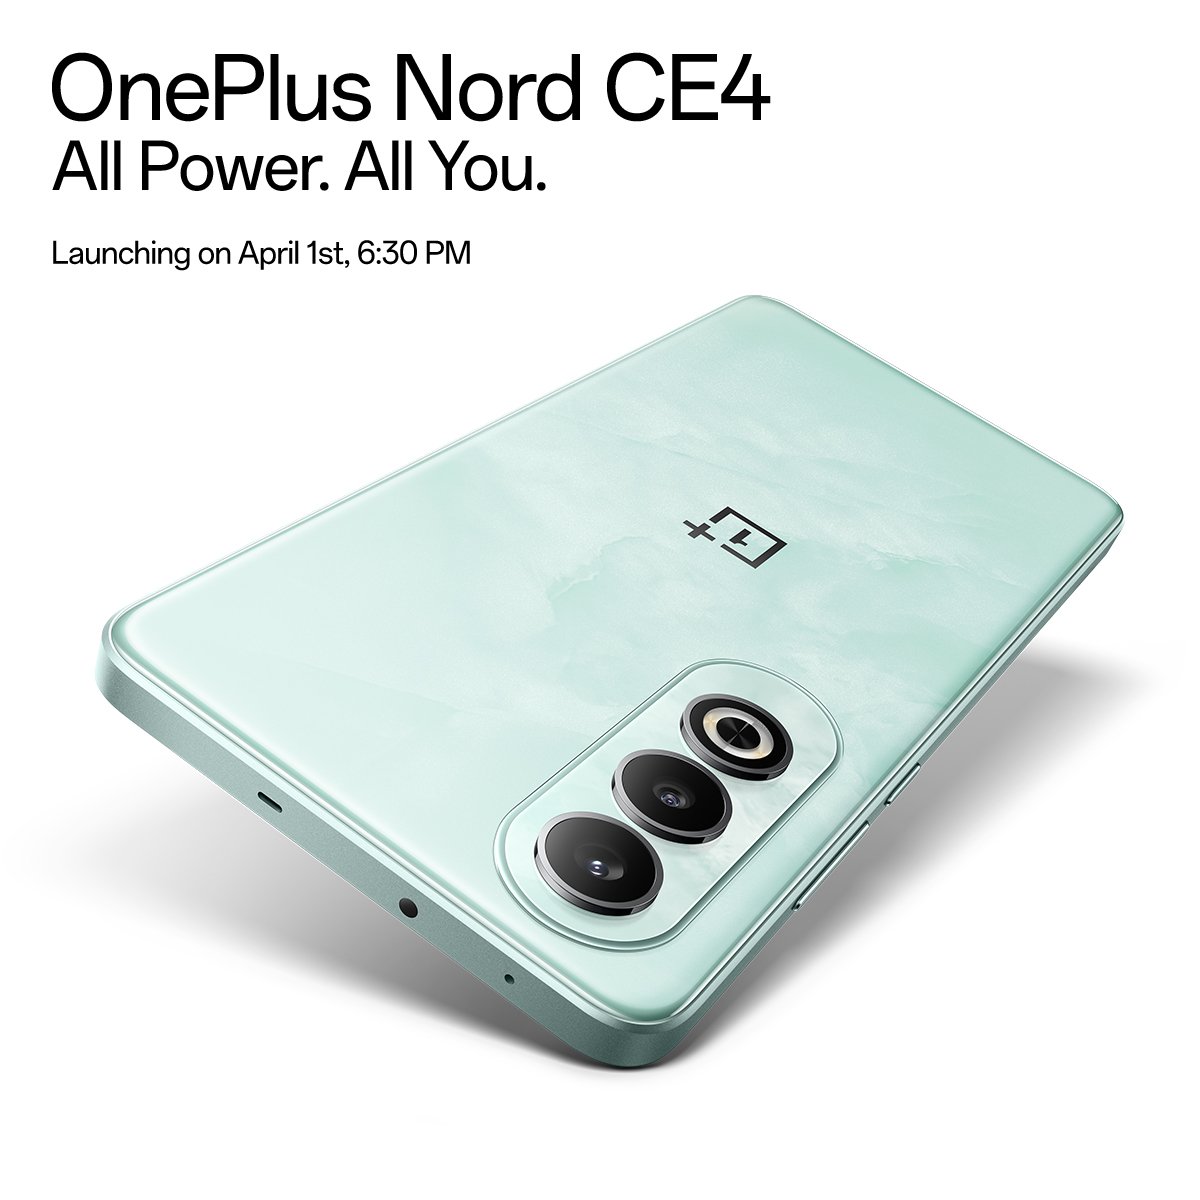 smartfon OnePlus Nord CE 4 cena specyfikacja data premiery